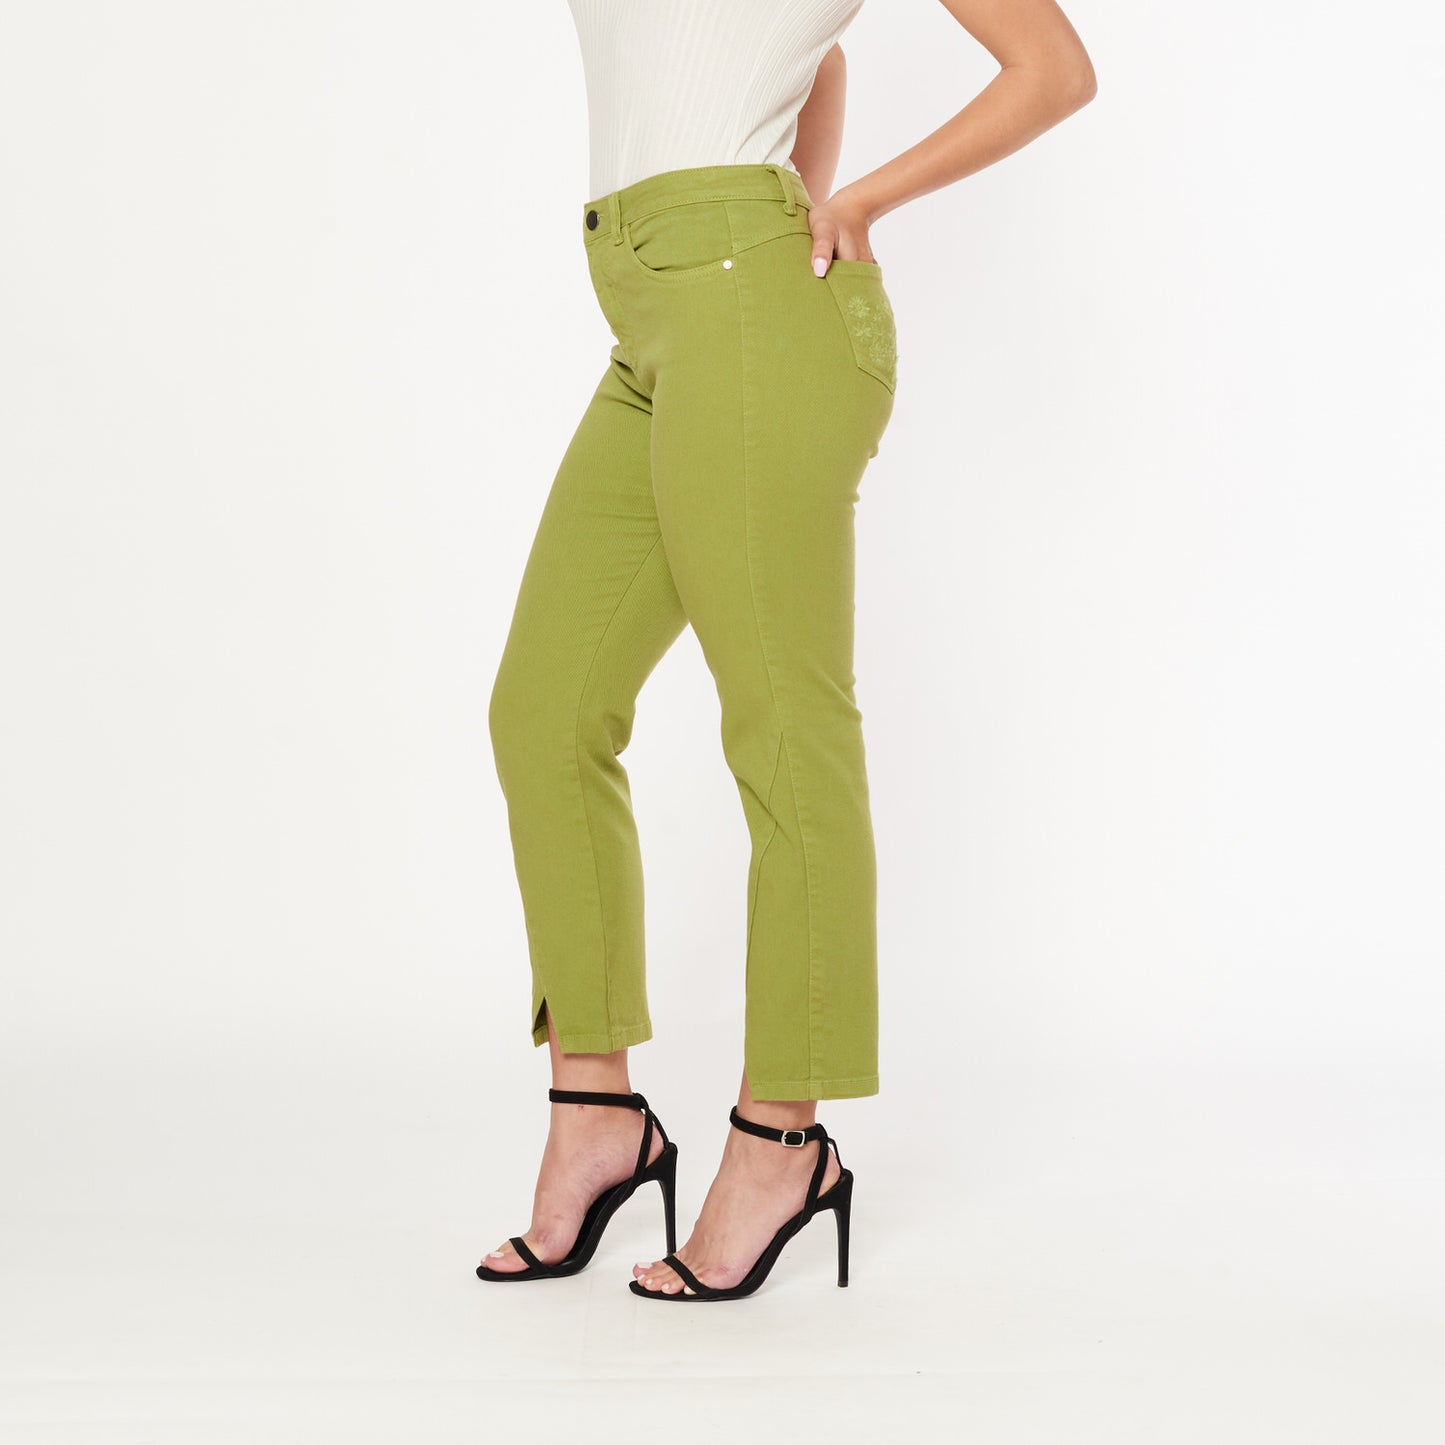 Pantalon Daria Verde